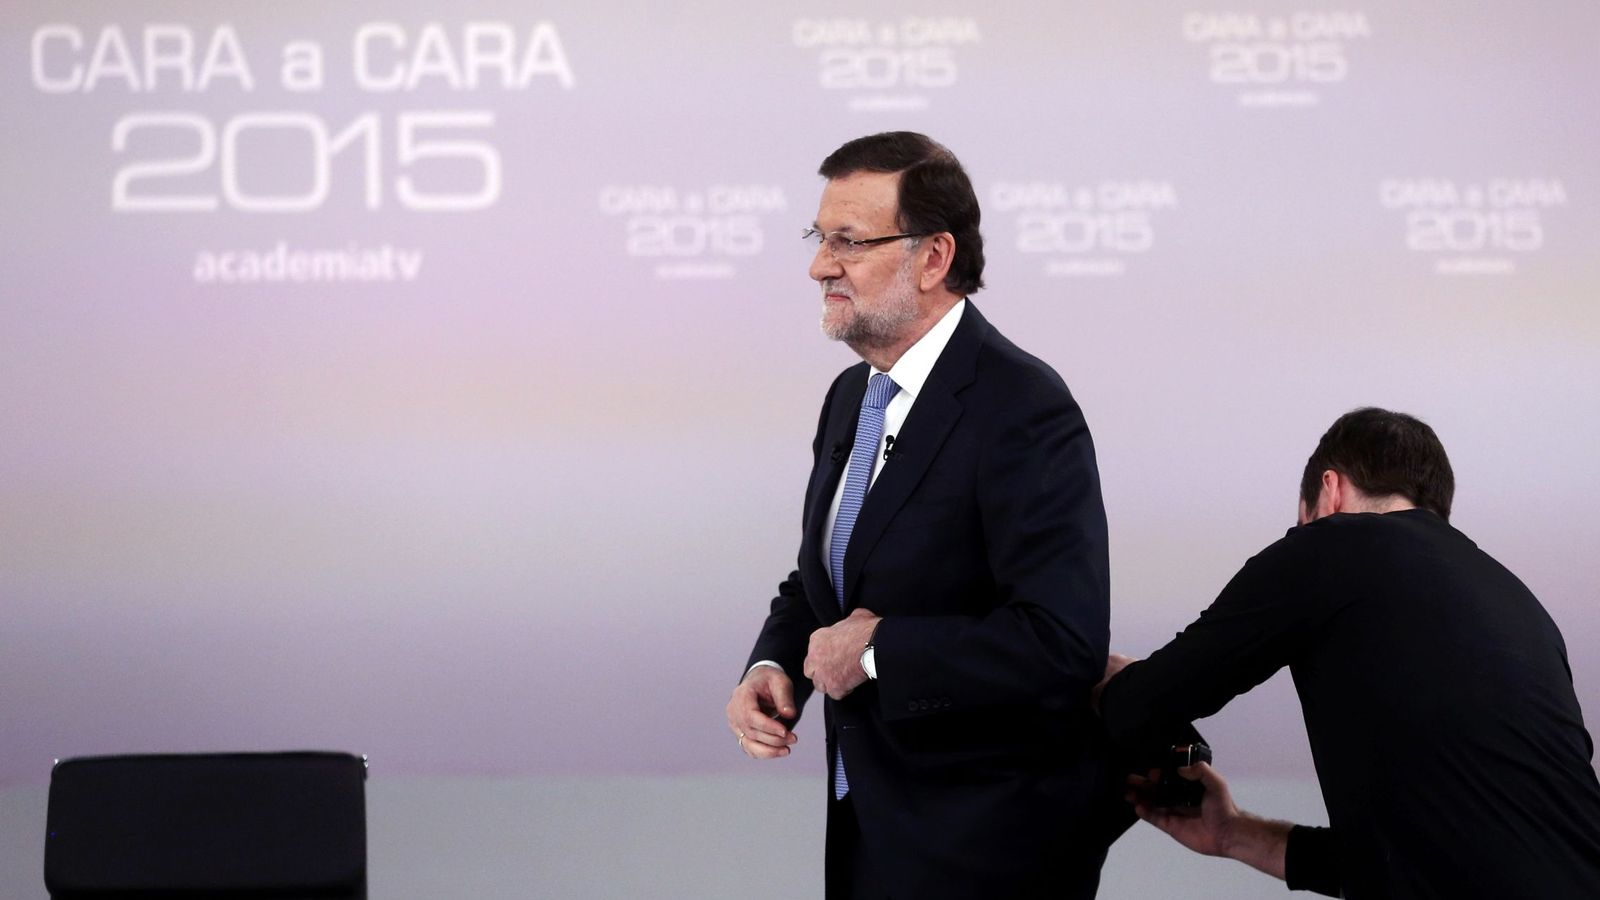 Foto: El presidente del Gobierno, Mariano Rajoy, antes del cara a cara con Pedro Sánchez. (Reuters)